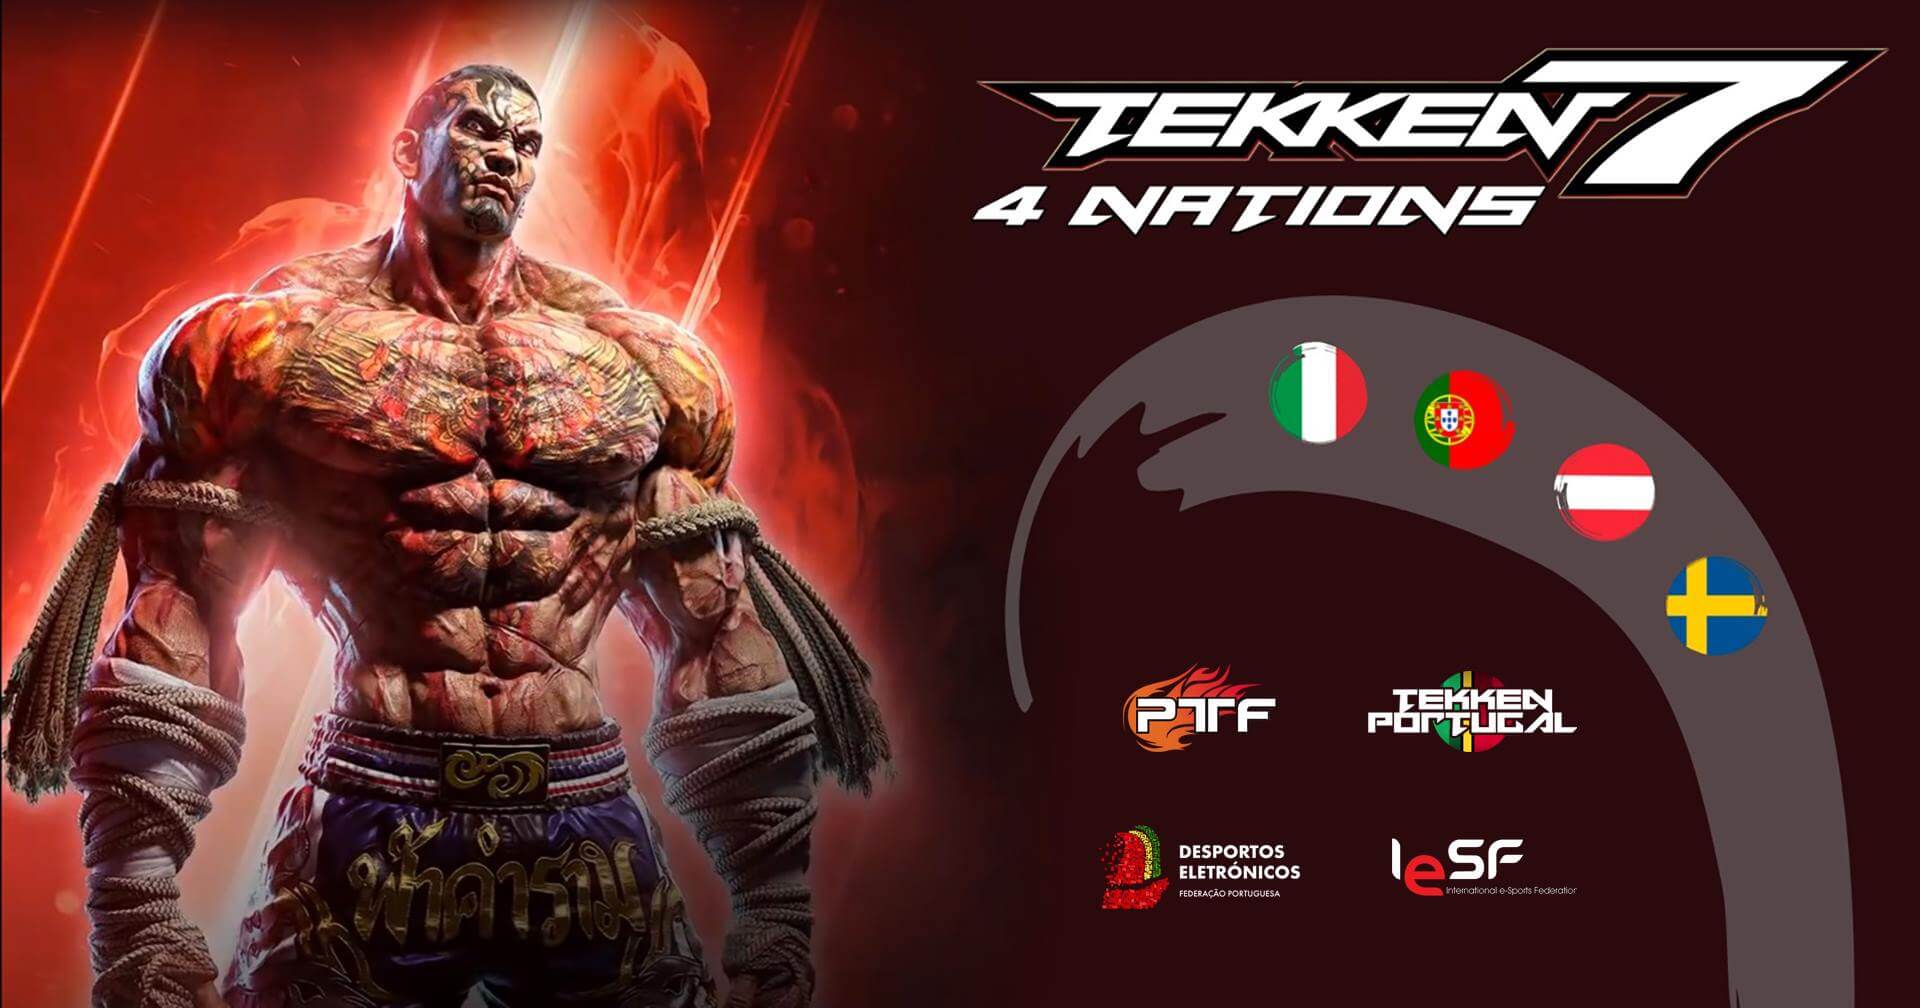 Tekken 4 Nations